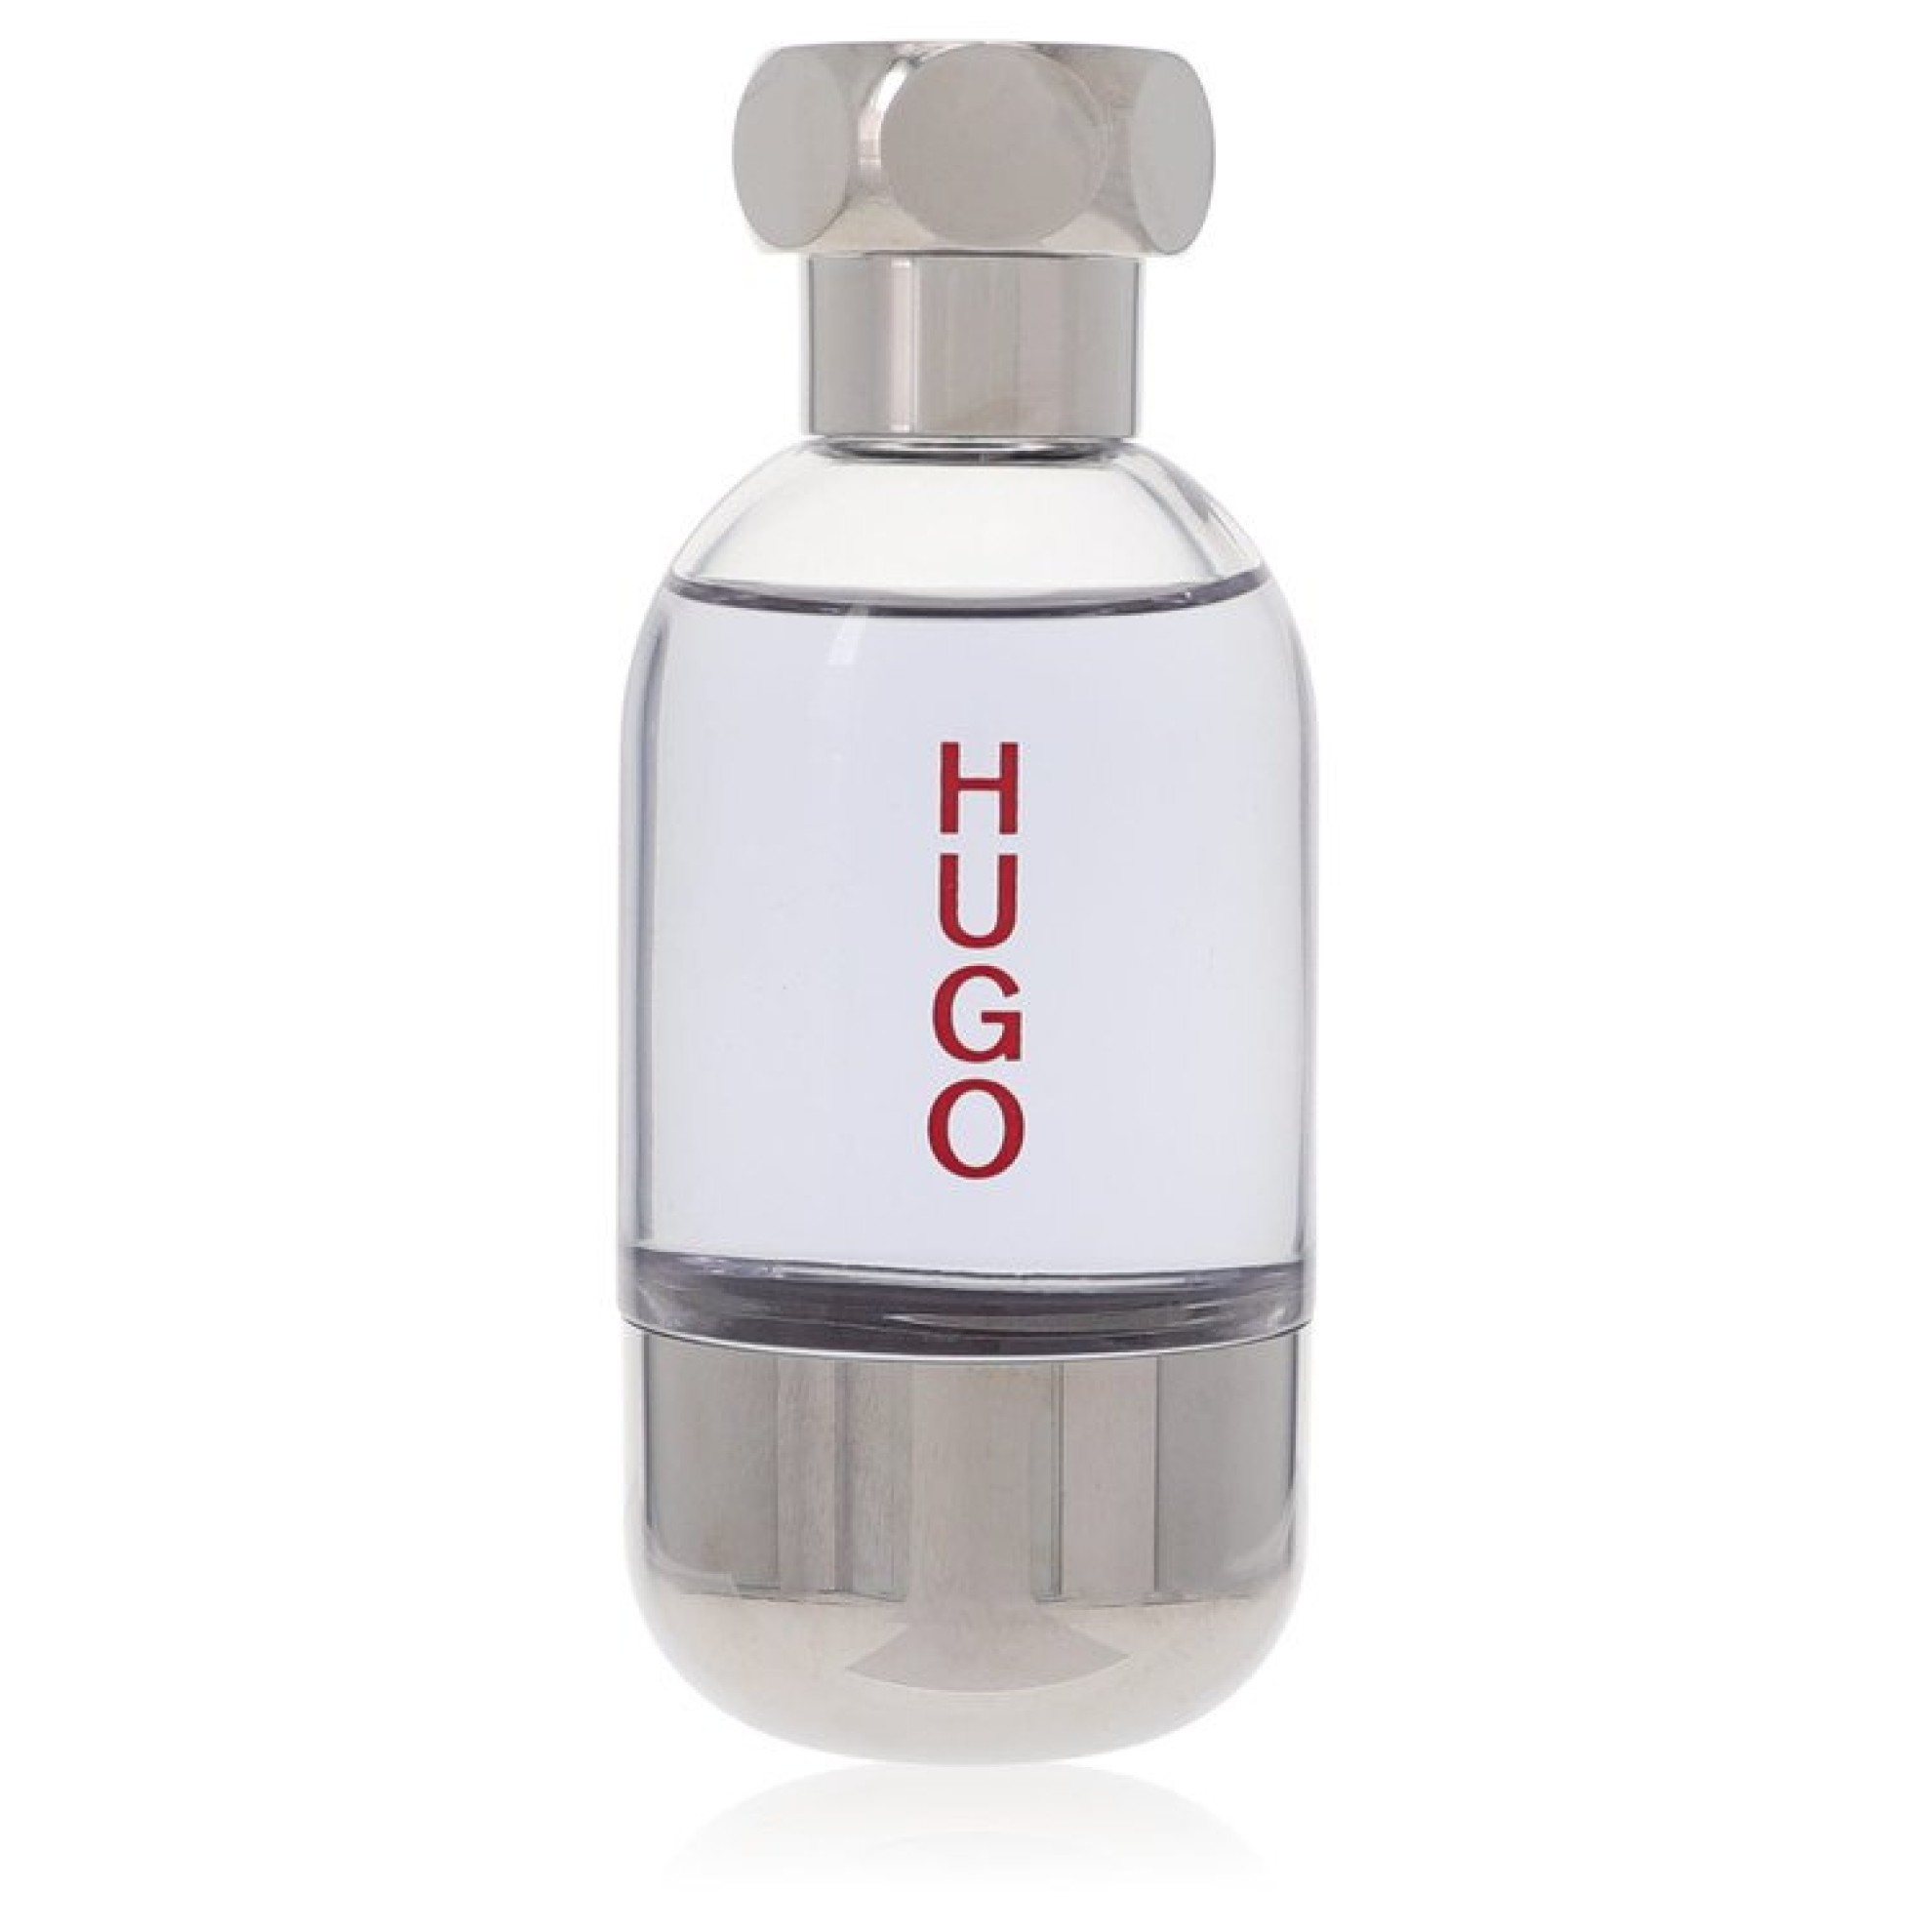 Image of Hugo Boss Hugo Element After Shave (unboxed) 60 ml von XXL-Parfum.ch